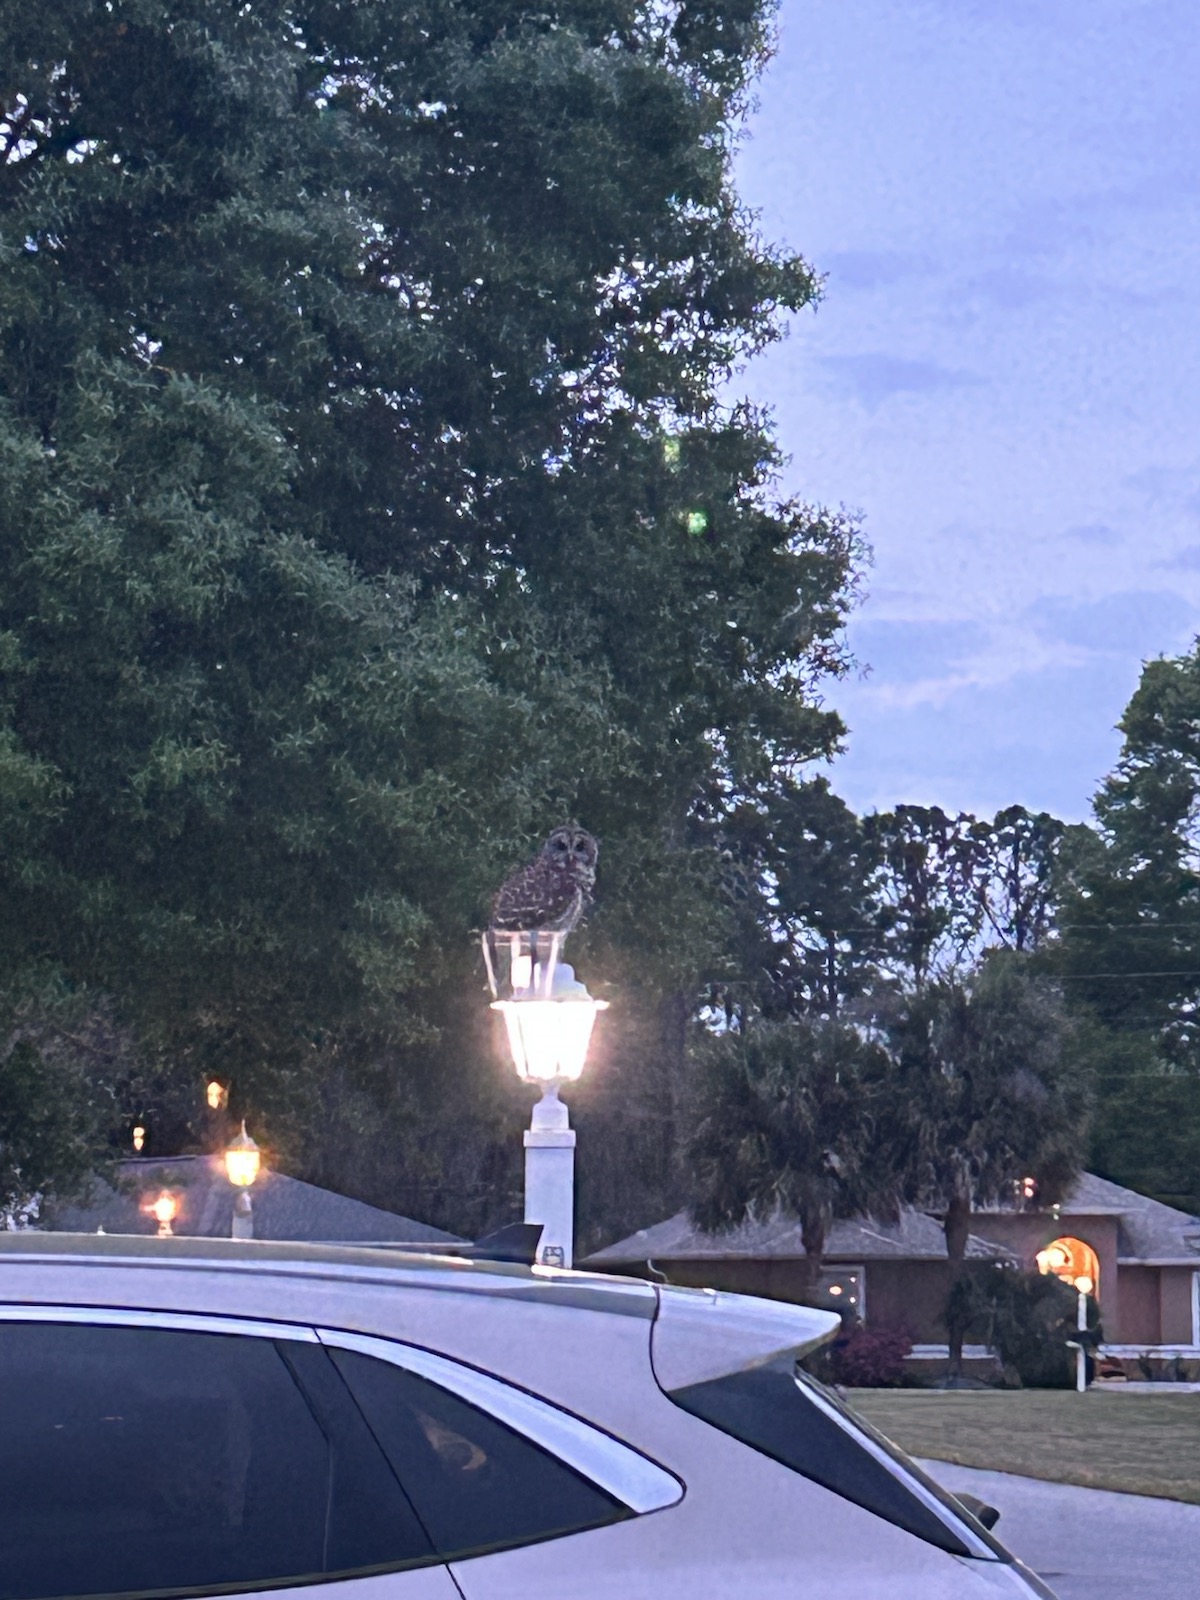 Owl perched on lamppost in Ocala neighborhood